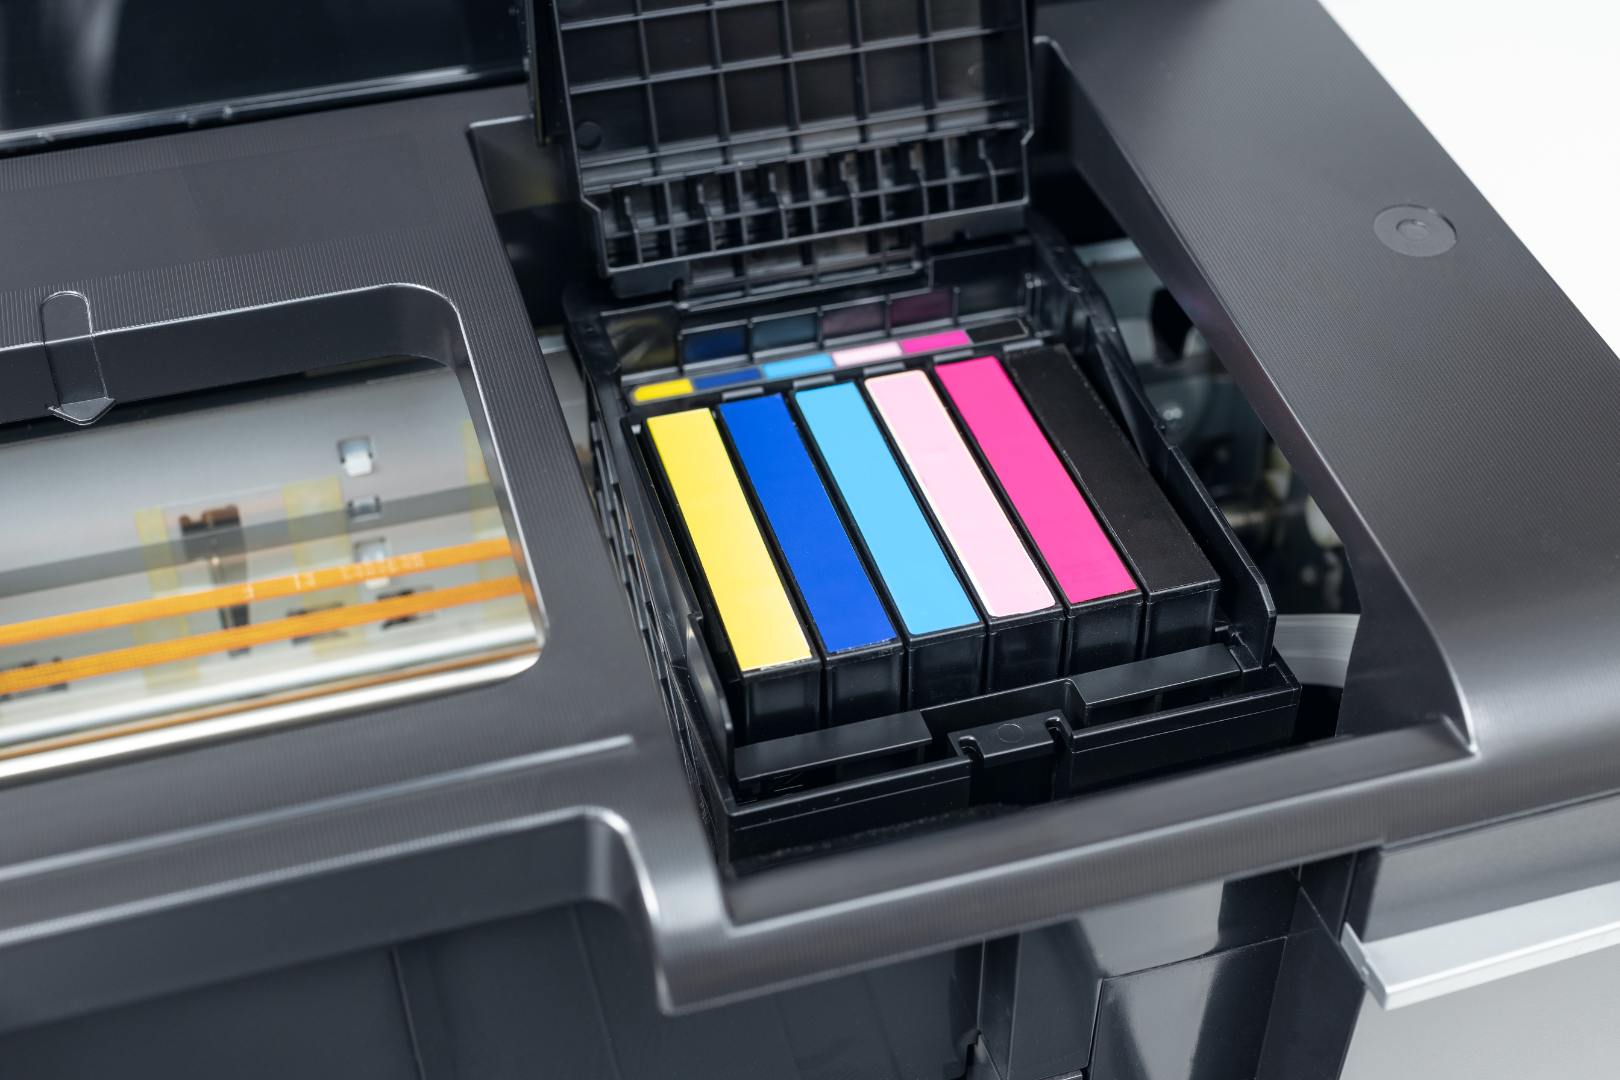 Melhores Impressoras Tanque Tinta Colorida: 5 Ótimas Opções